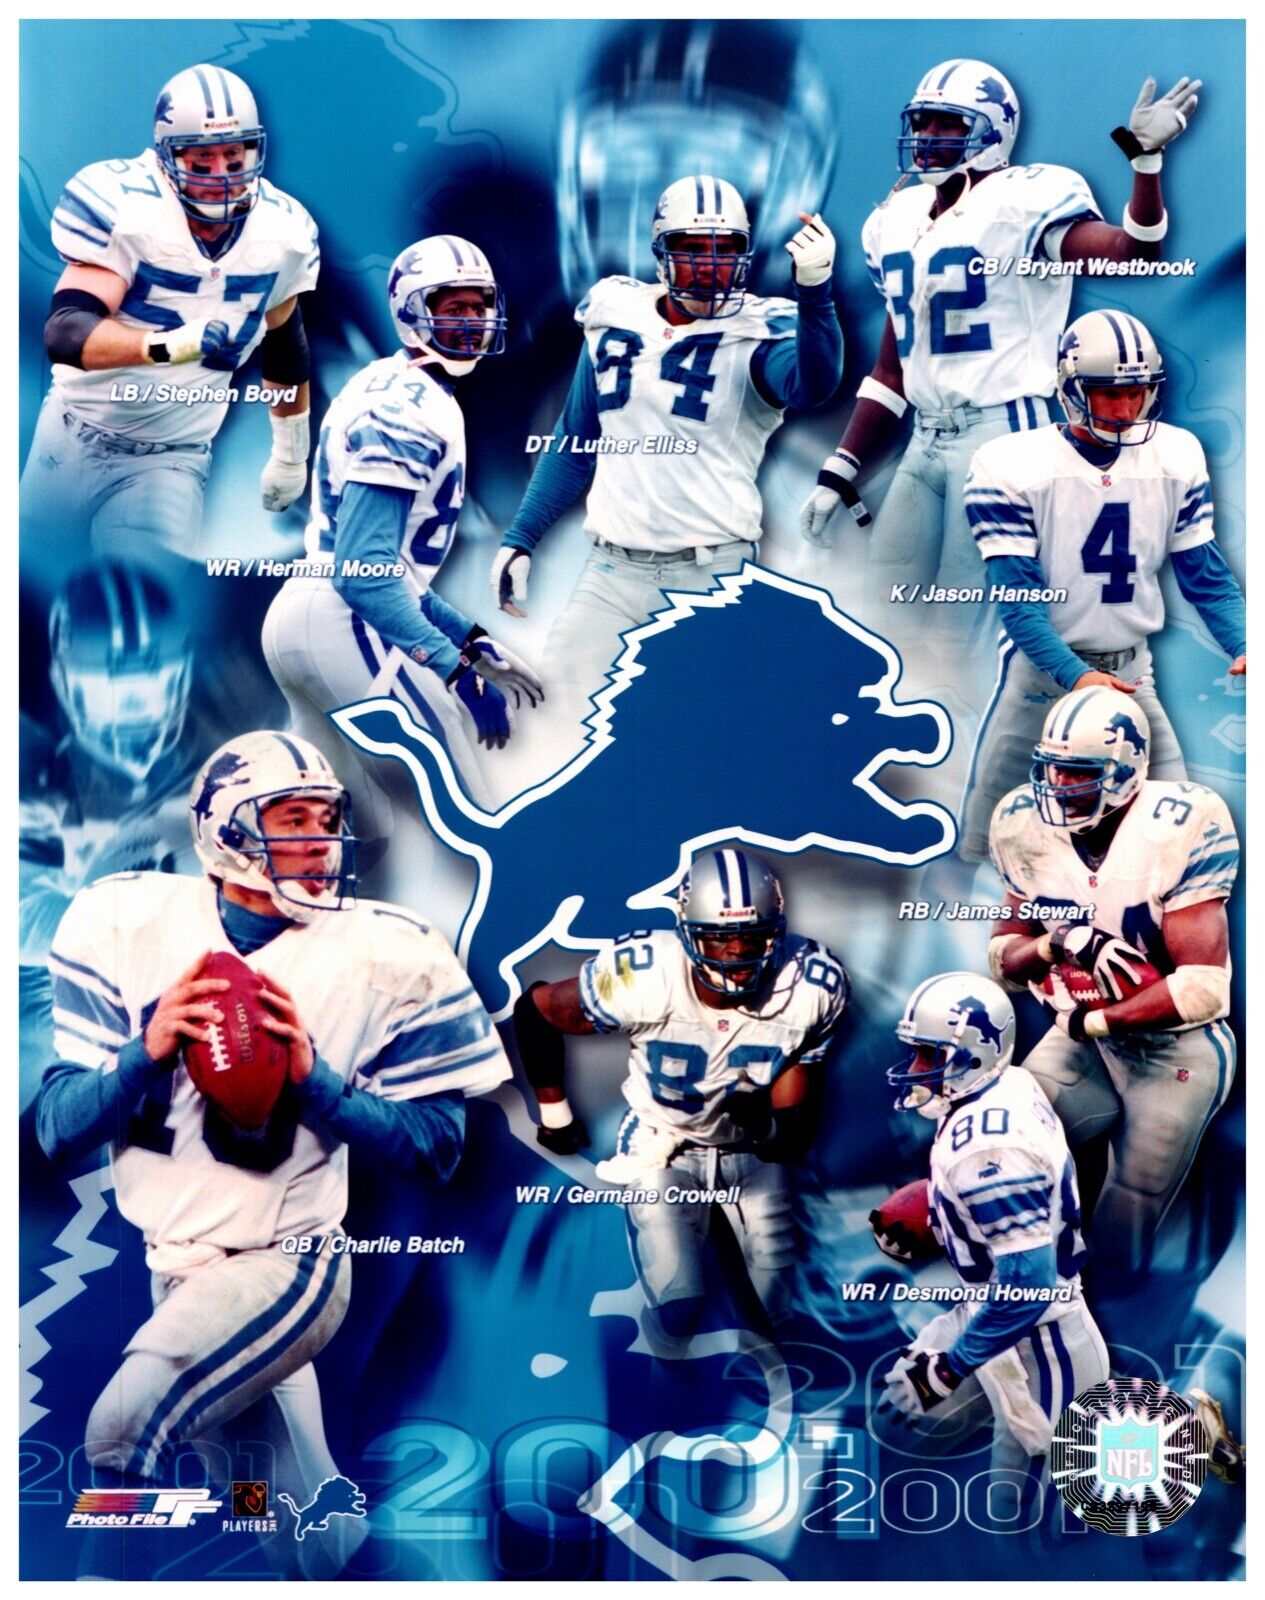 2001 Detroit Lions Team Composite Unsigned Photo File 8x10 Hologram Photo